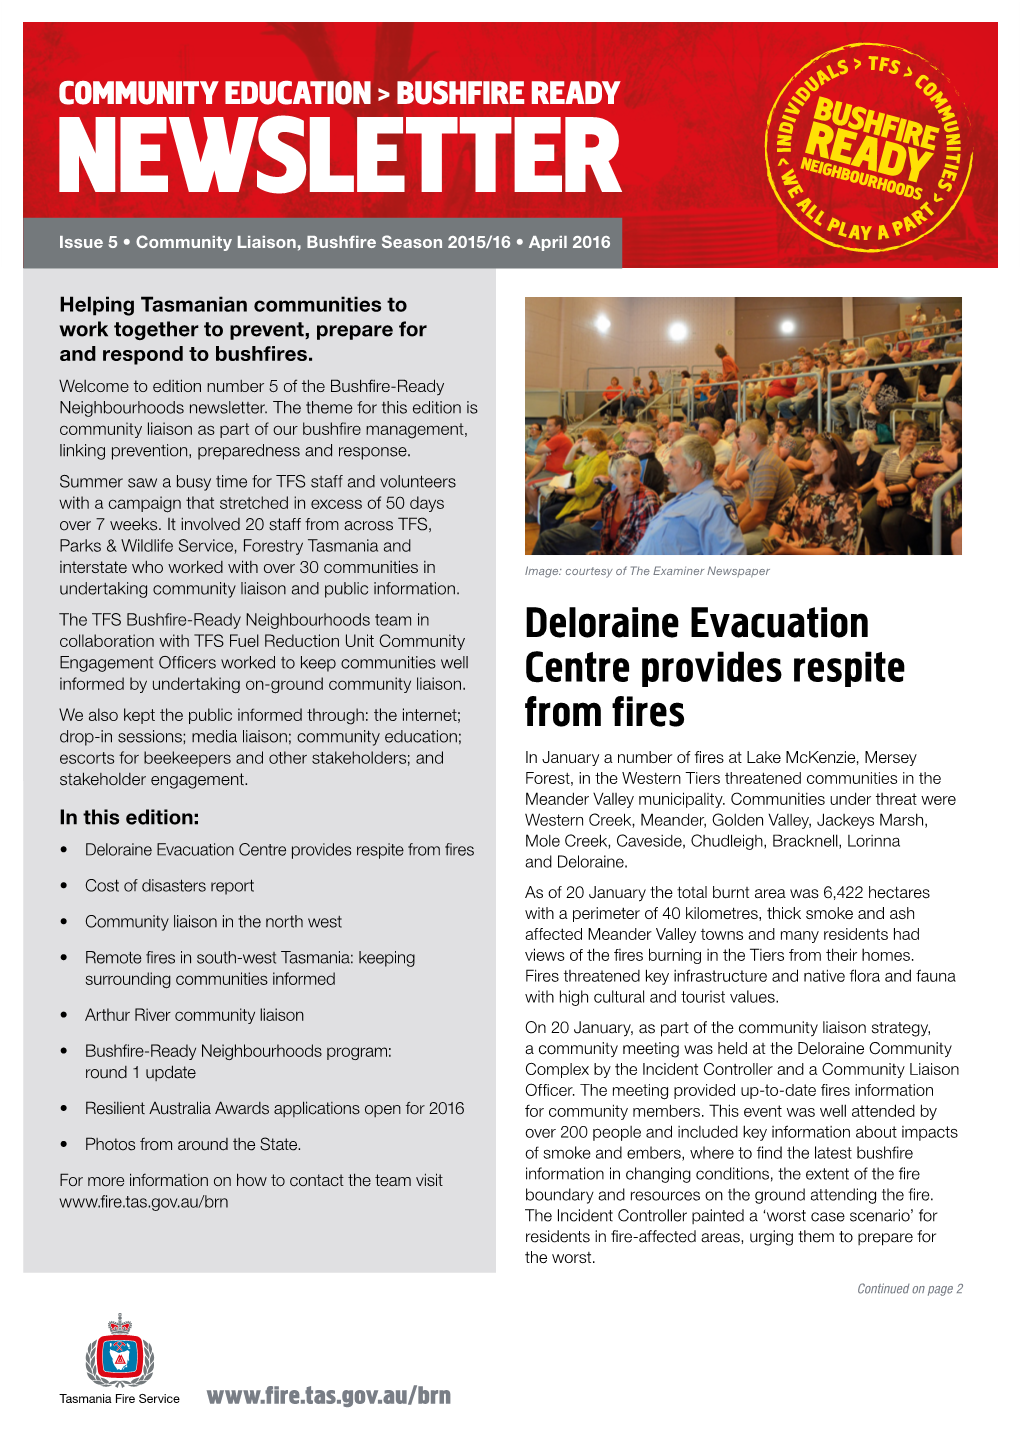 Deloraine Evacuation Centre Provides Respite from Fires and Deloraine